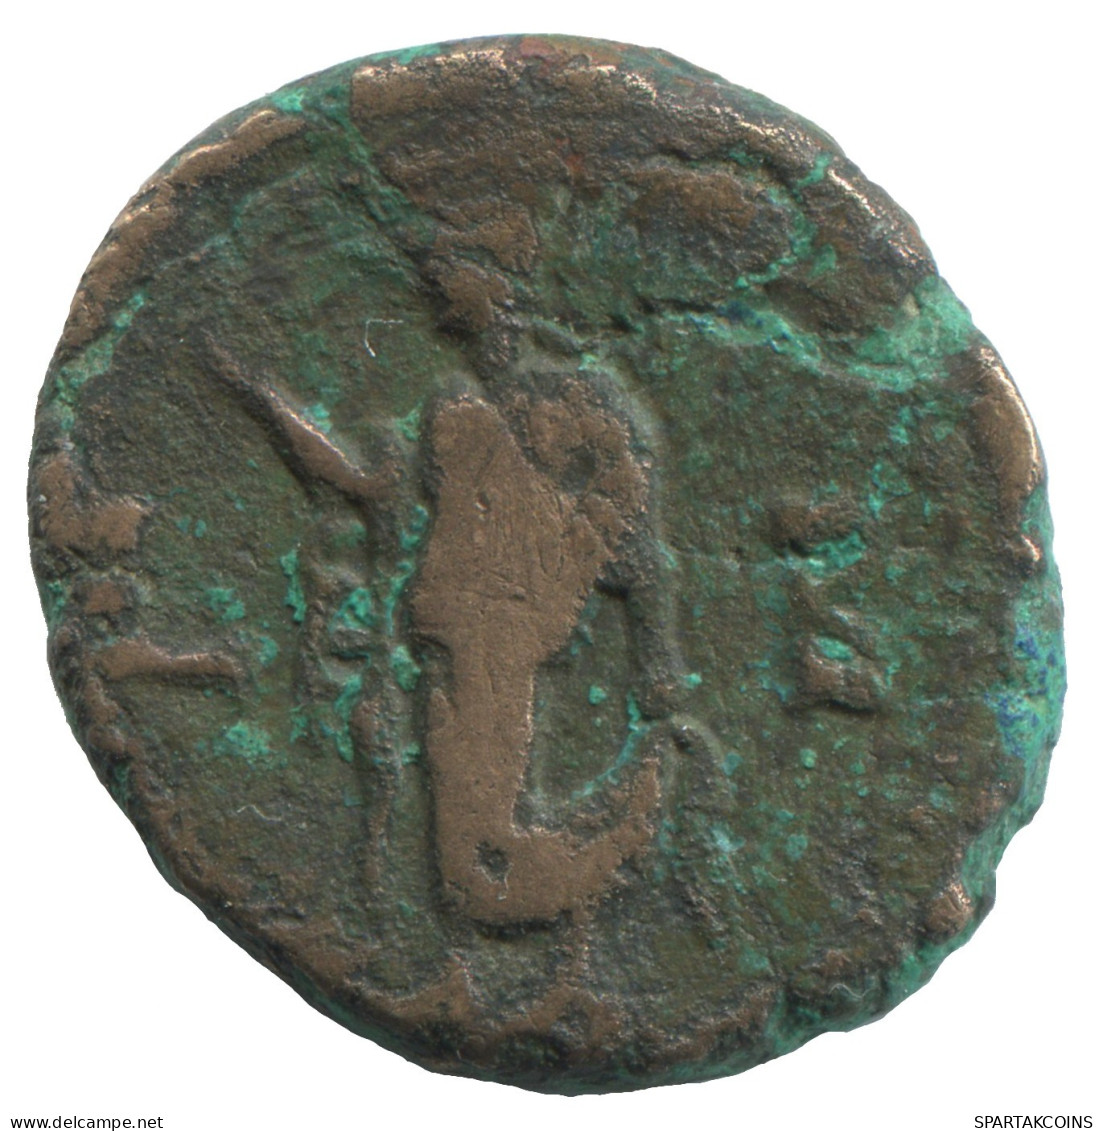 MAXIMIANUS AD286-287 L - B Alexandria Tetradrachm 7.3g/22mm #NNN2049.18.F.A - Röm. Provinz